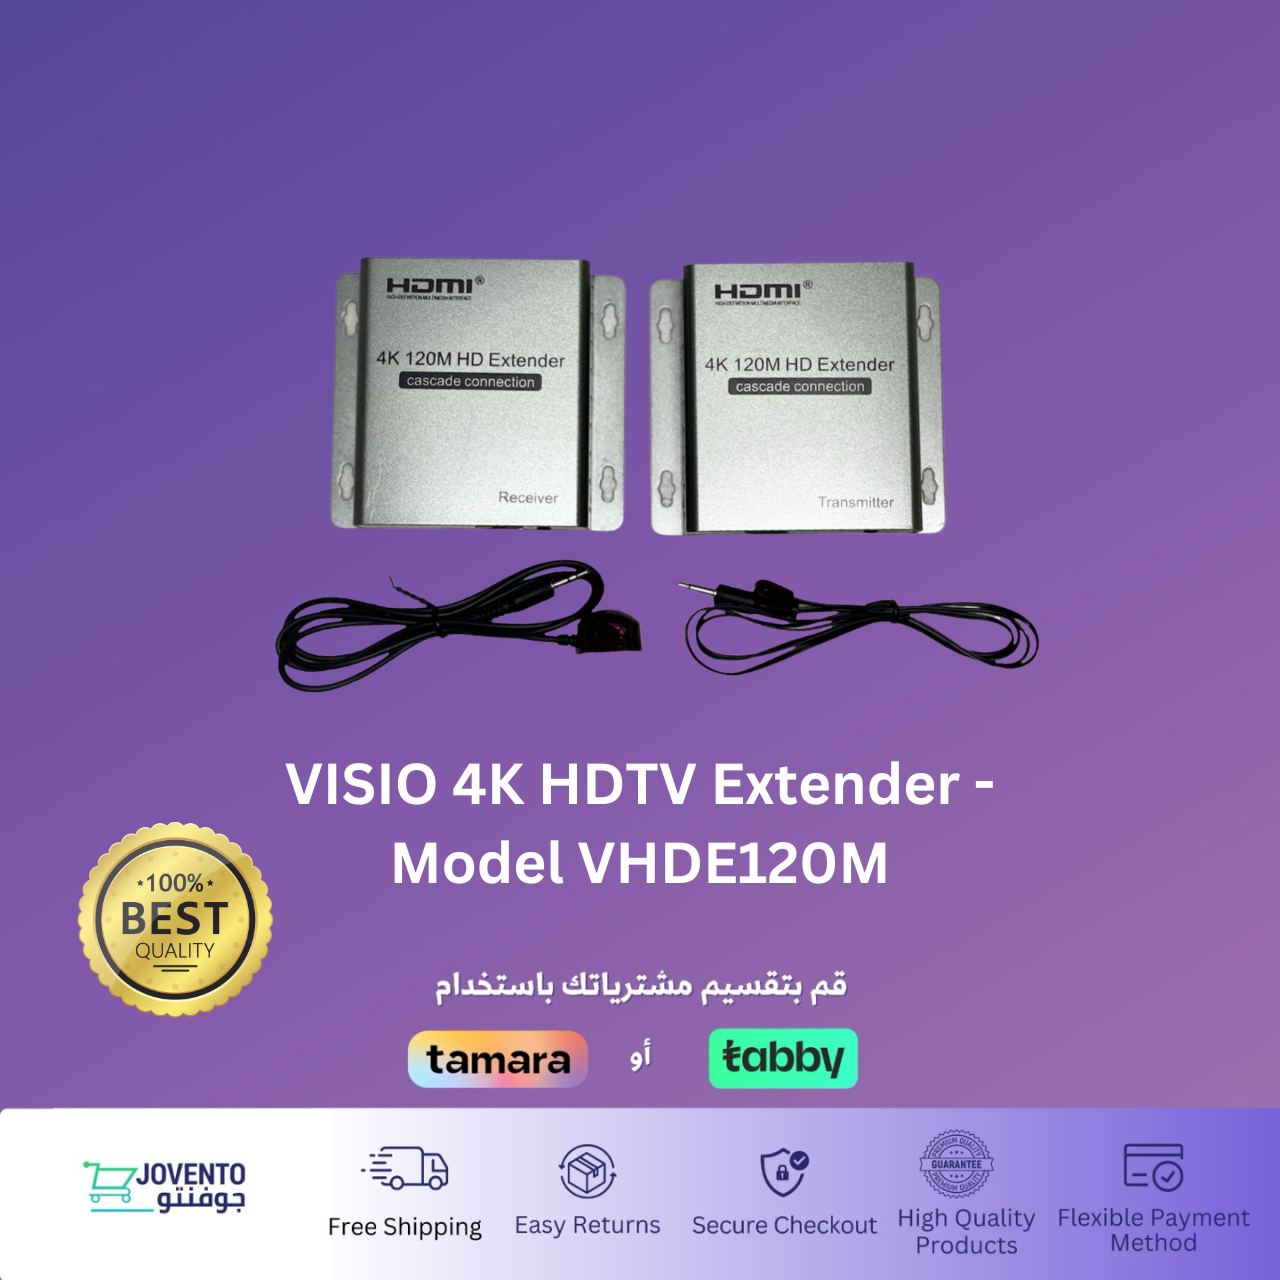 VISIO 4K HDTV Extender - Model VHDE120M